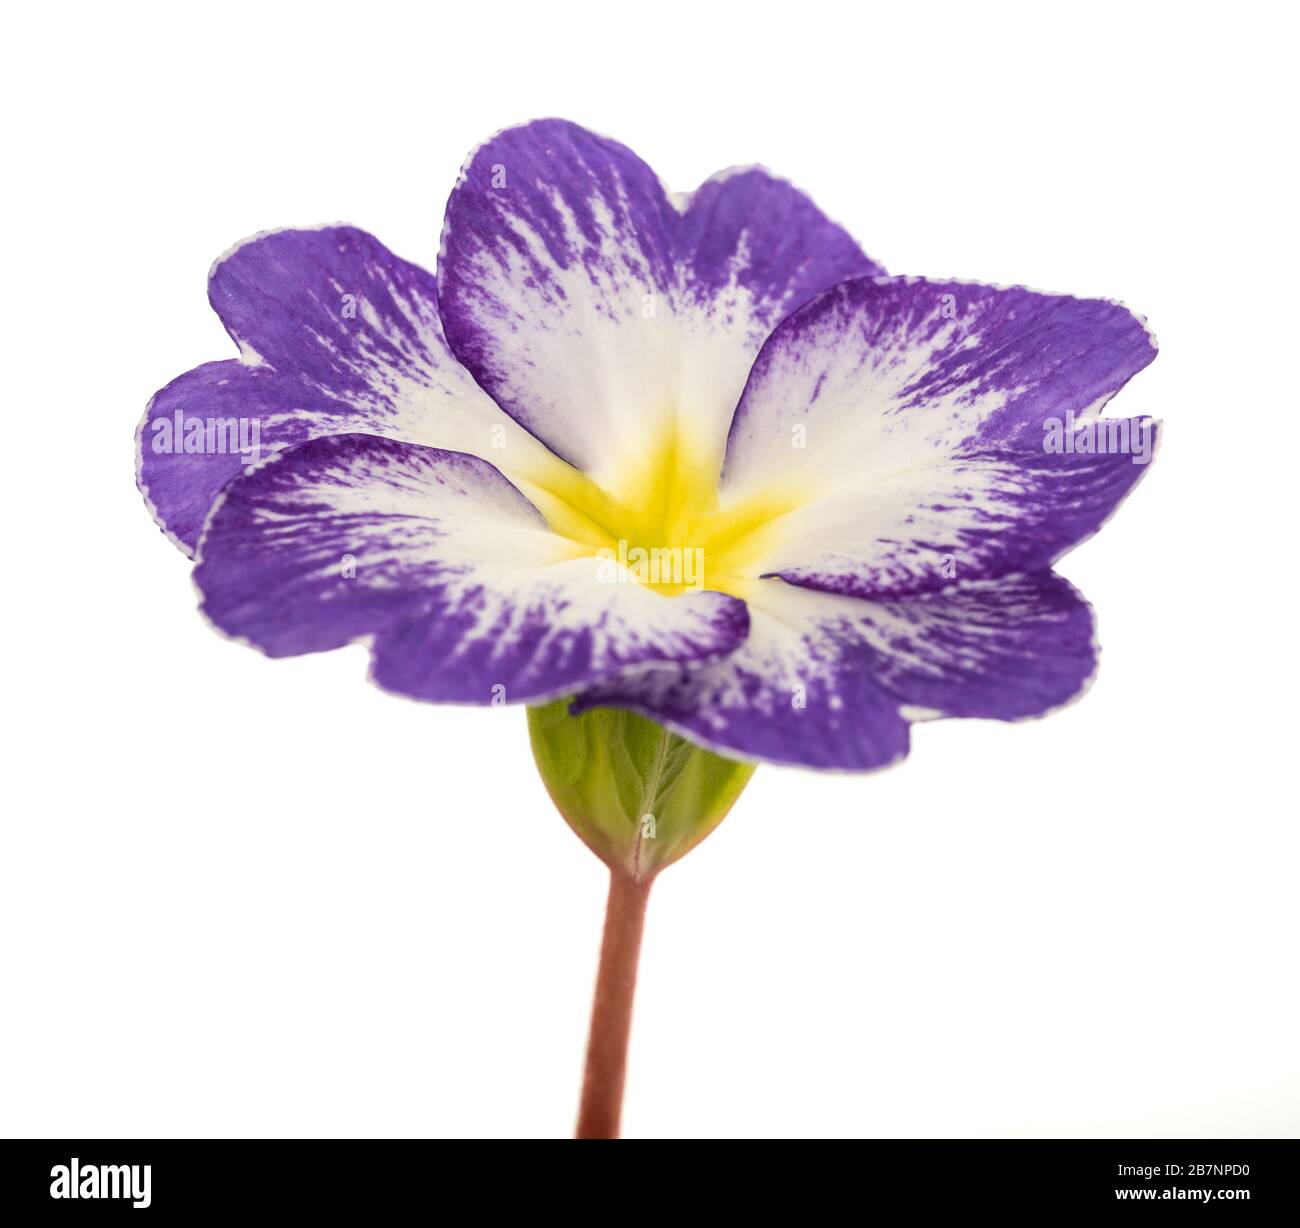 primrose flower isolated on white background Stock Photo